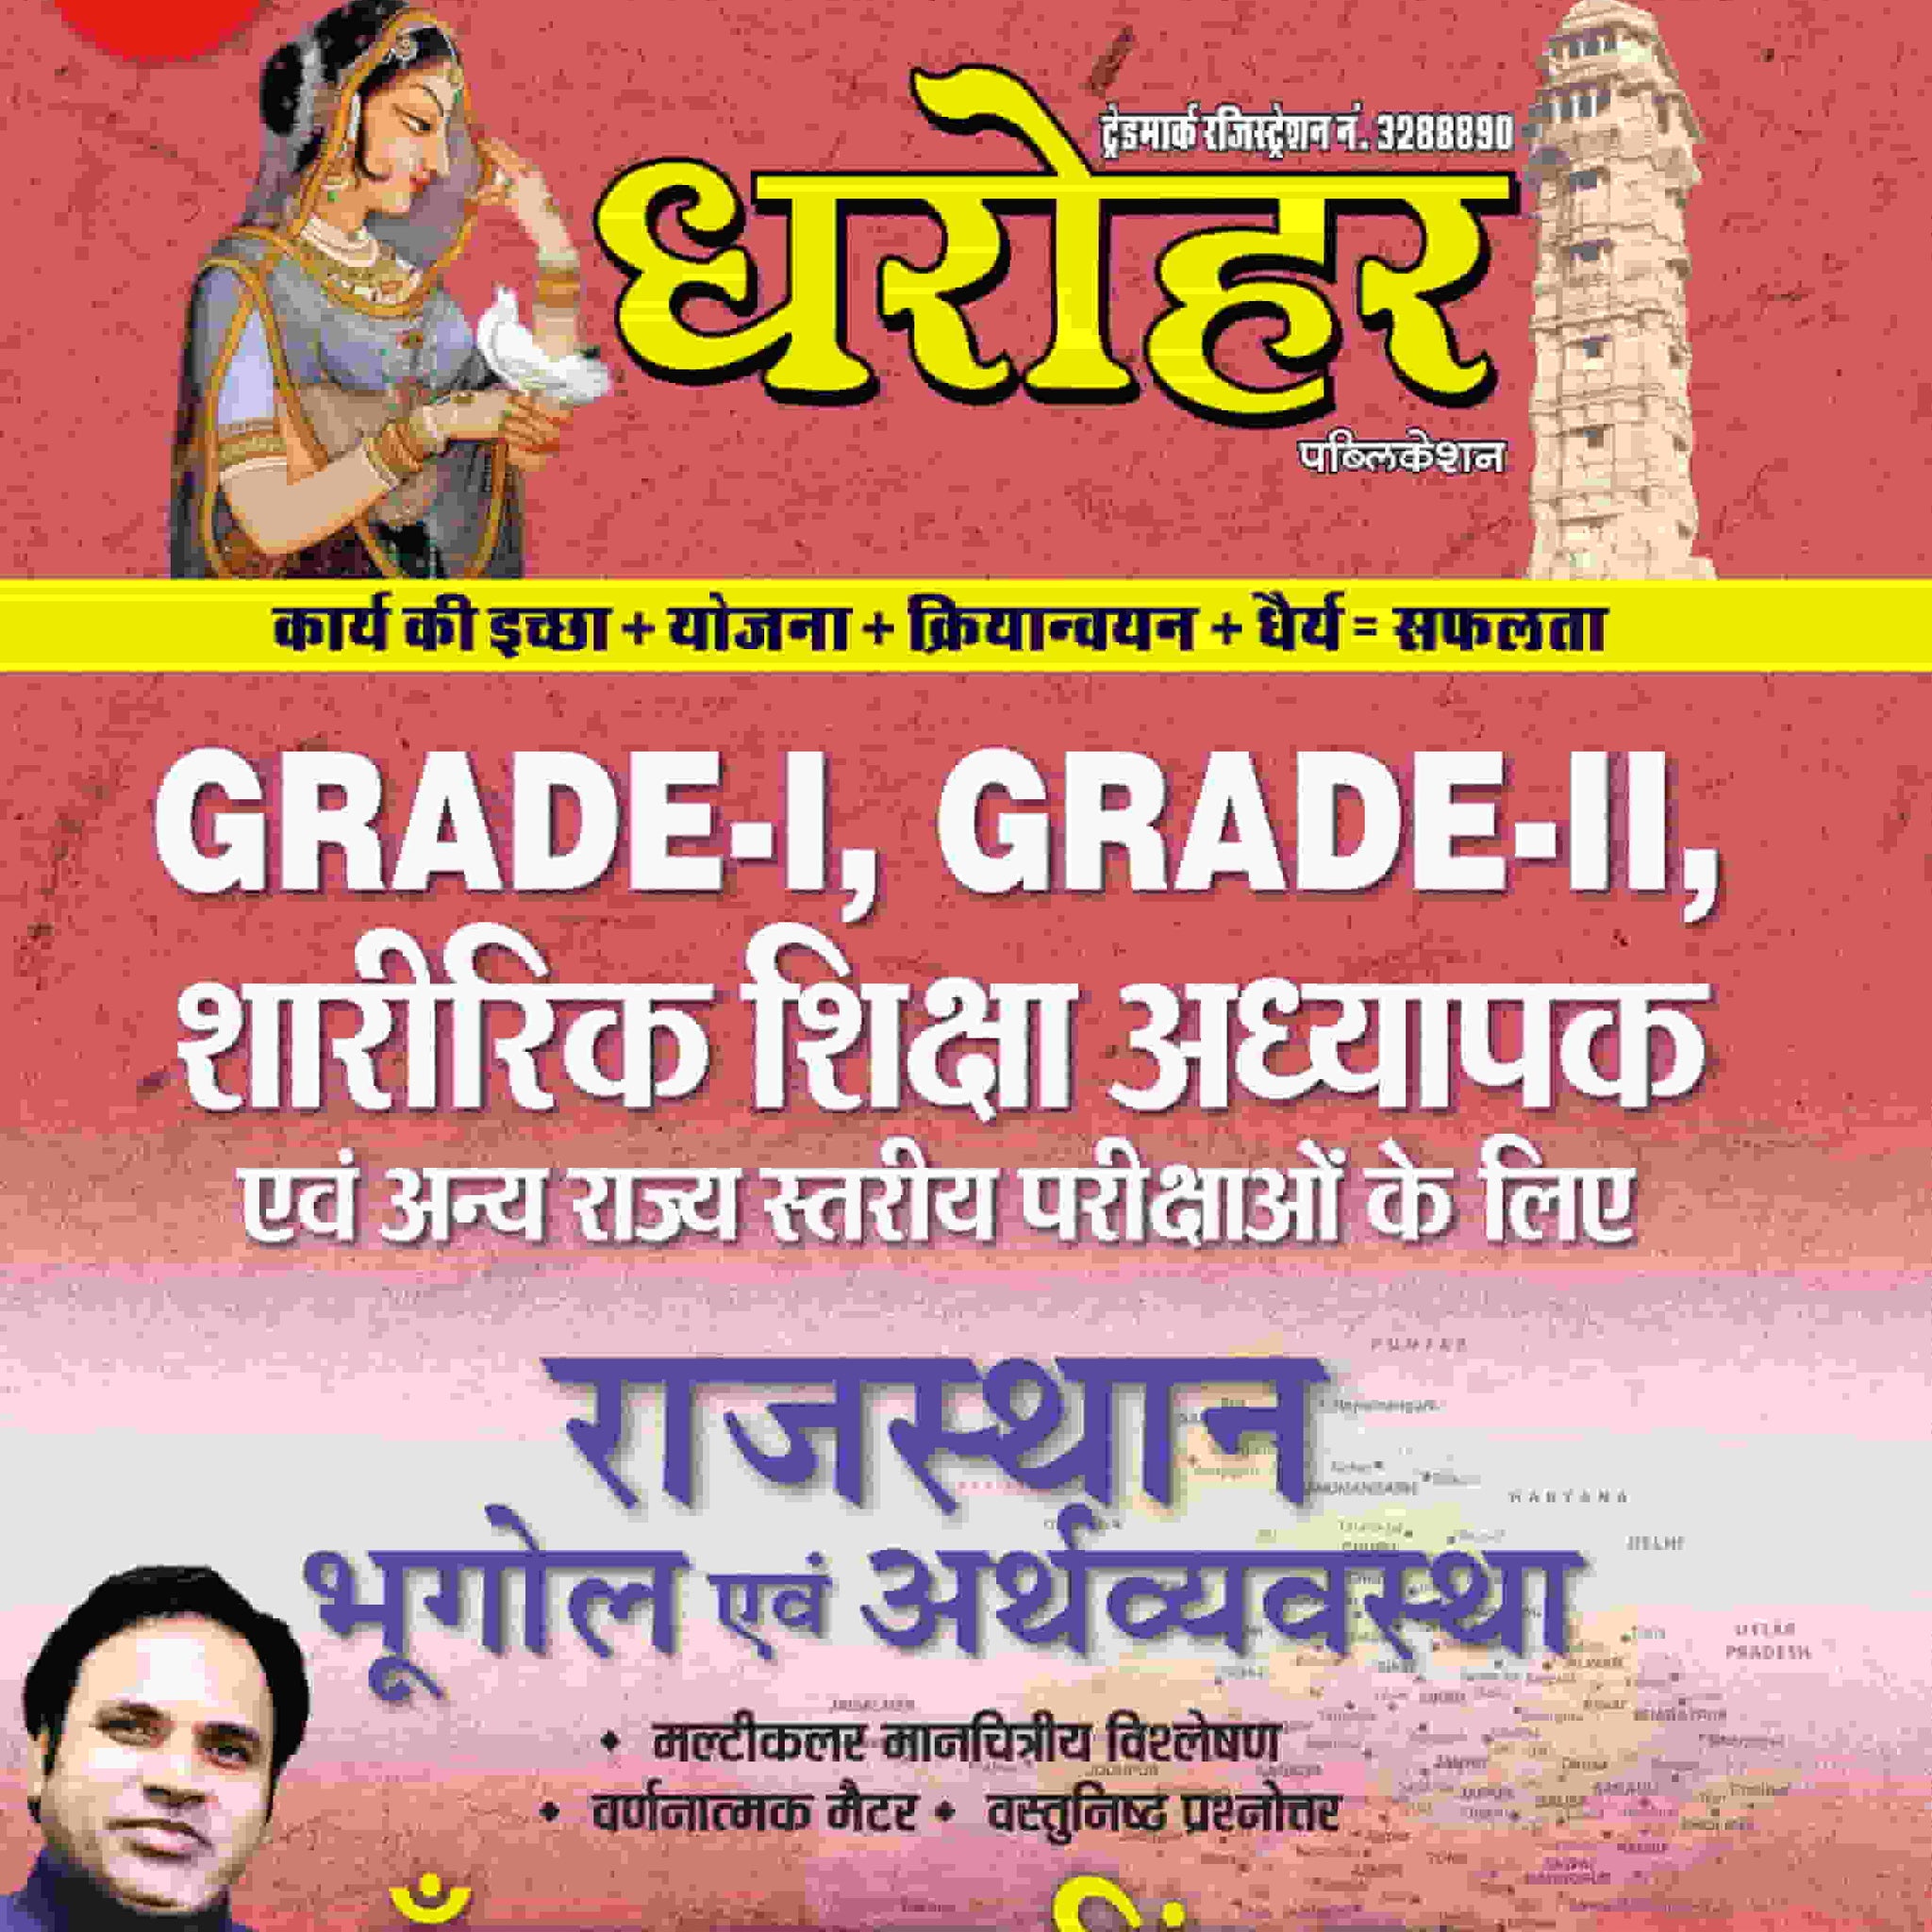 Dharohar Grade-I, Grade-II, Sharirik Shiksha Adhyapak Rajasthan Bhugol Evem Arthvyavastha